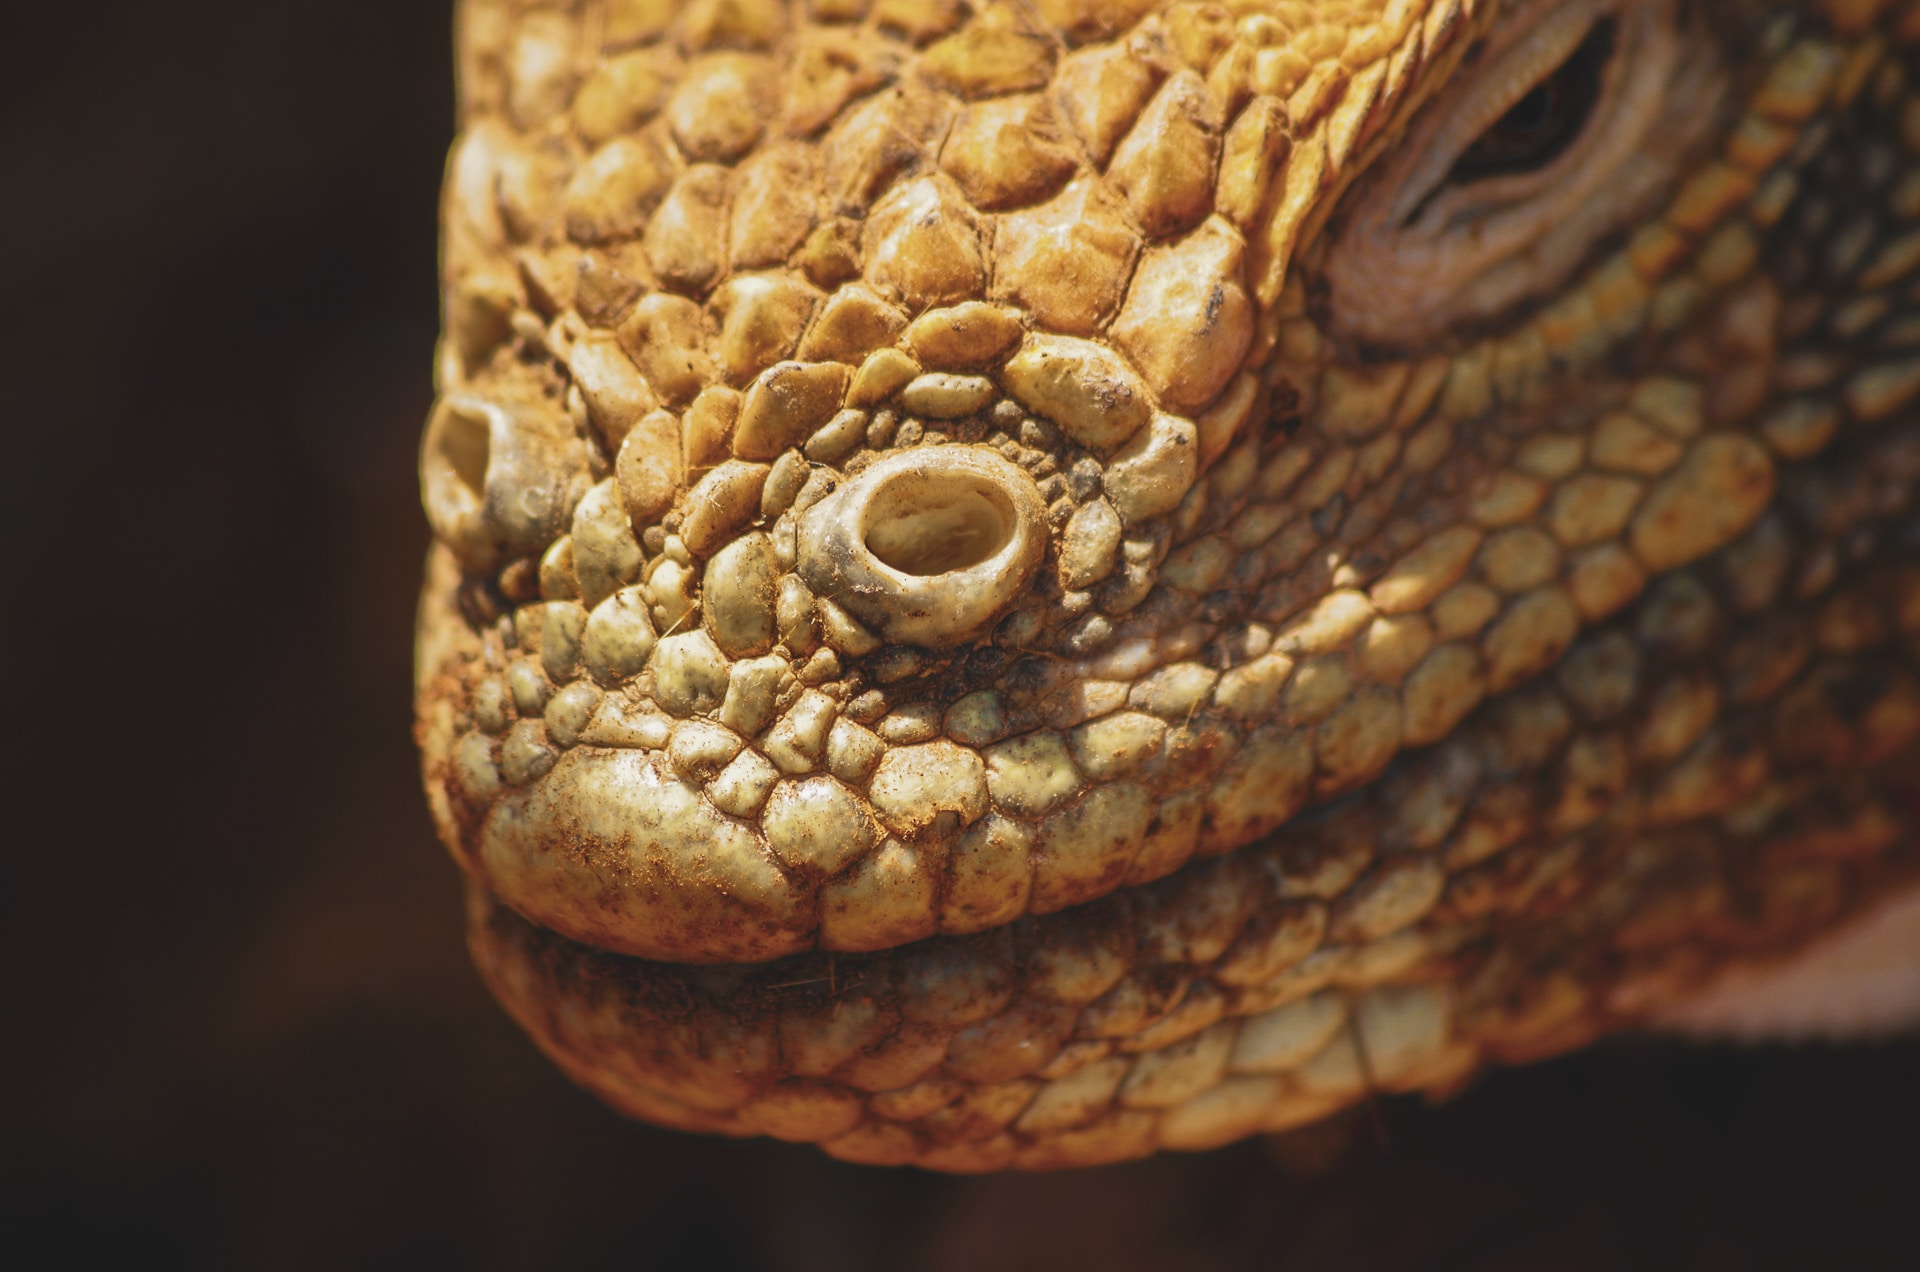 détail d'une tête d'un iguane terrestre aux Galapagos